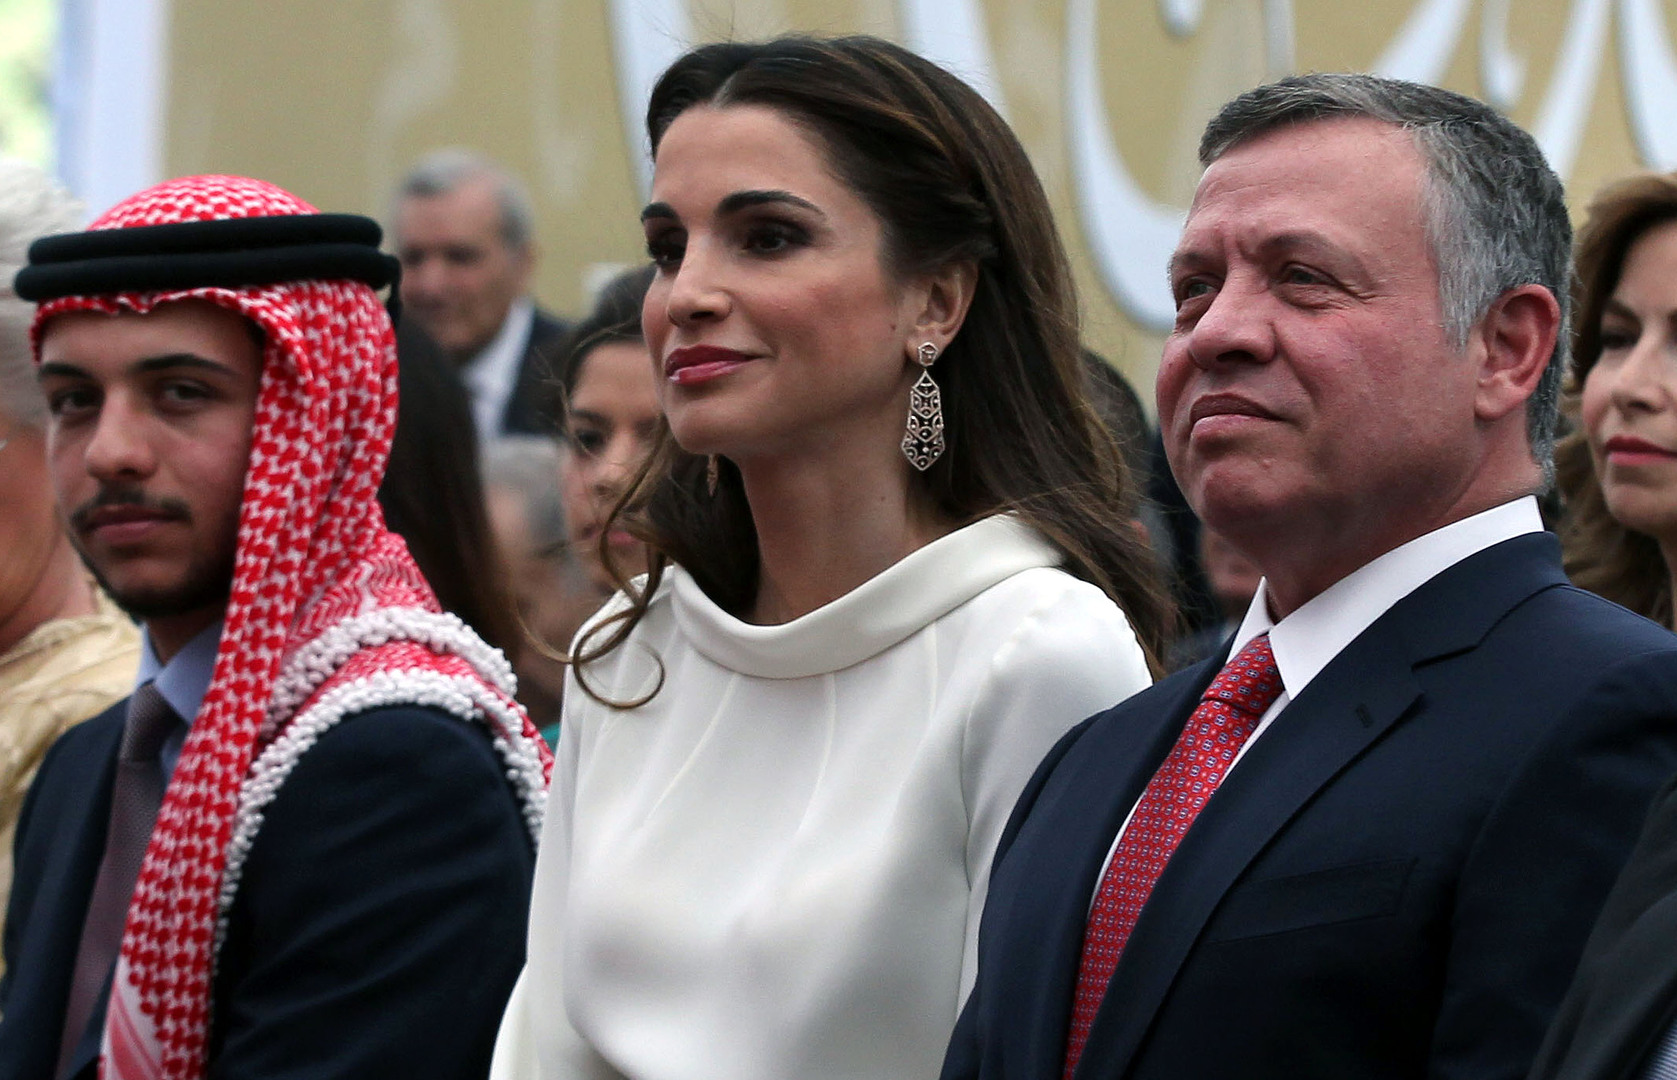 الملك الأردني غادر إلى الولايات المتحدة بزيارة خاصة تتبعها زيارة عمل